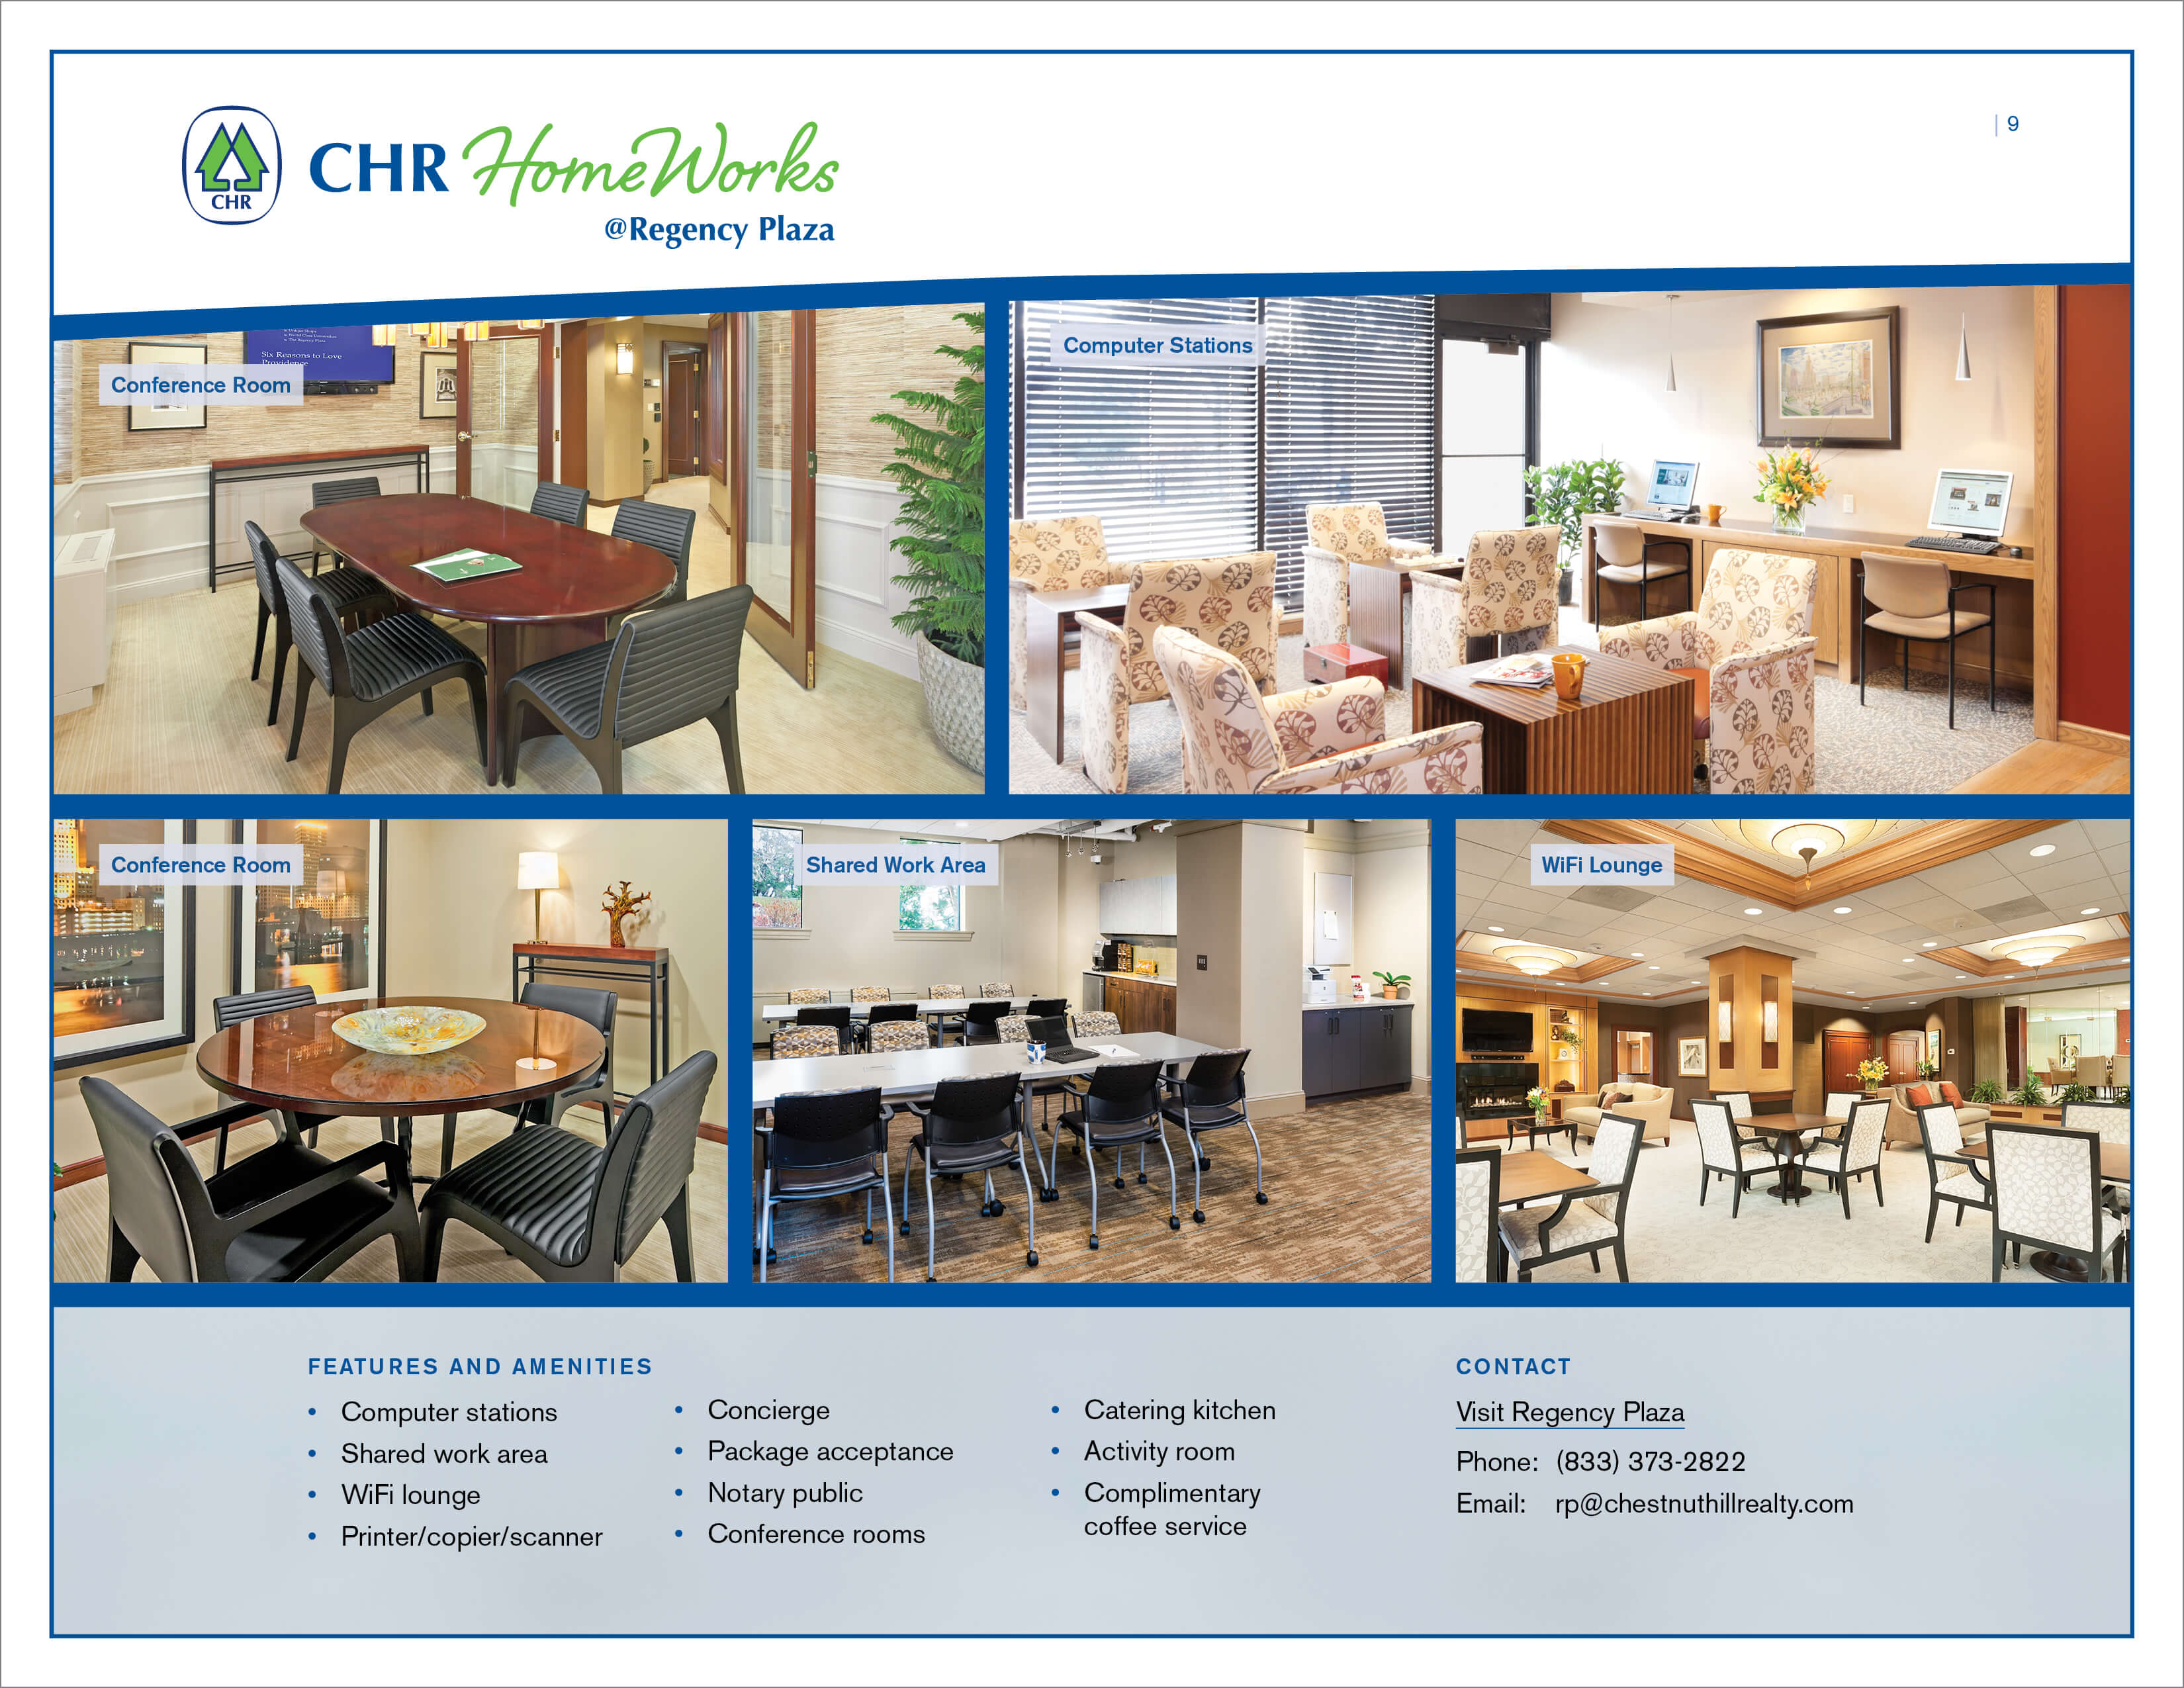 CHR HomeWorks Regency Plaza